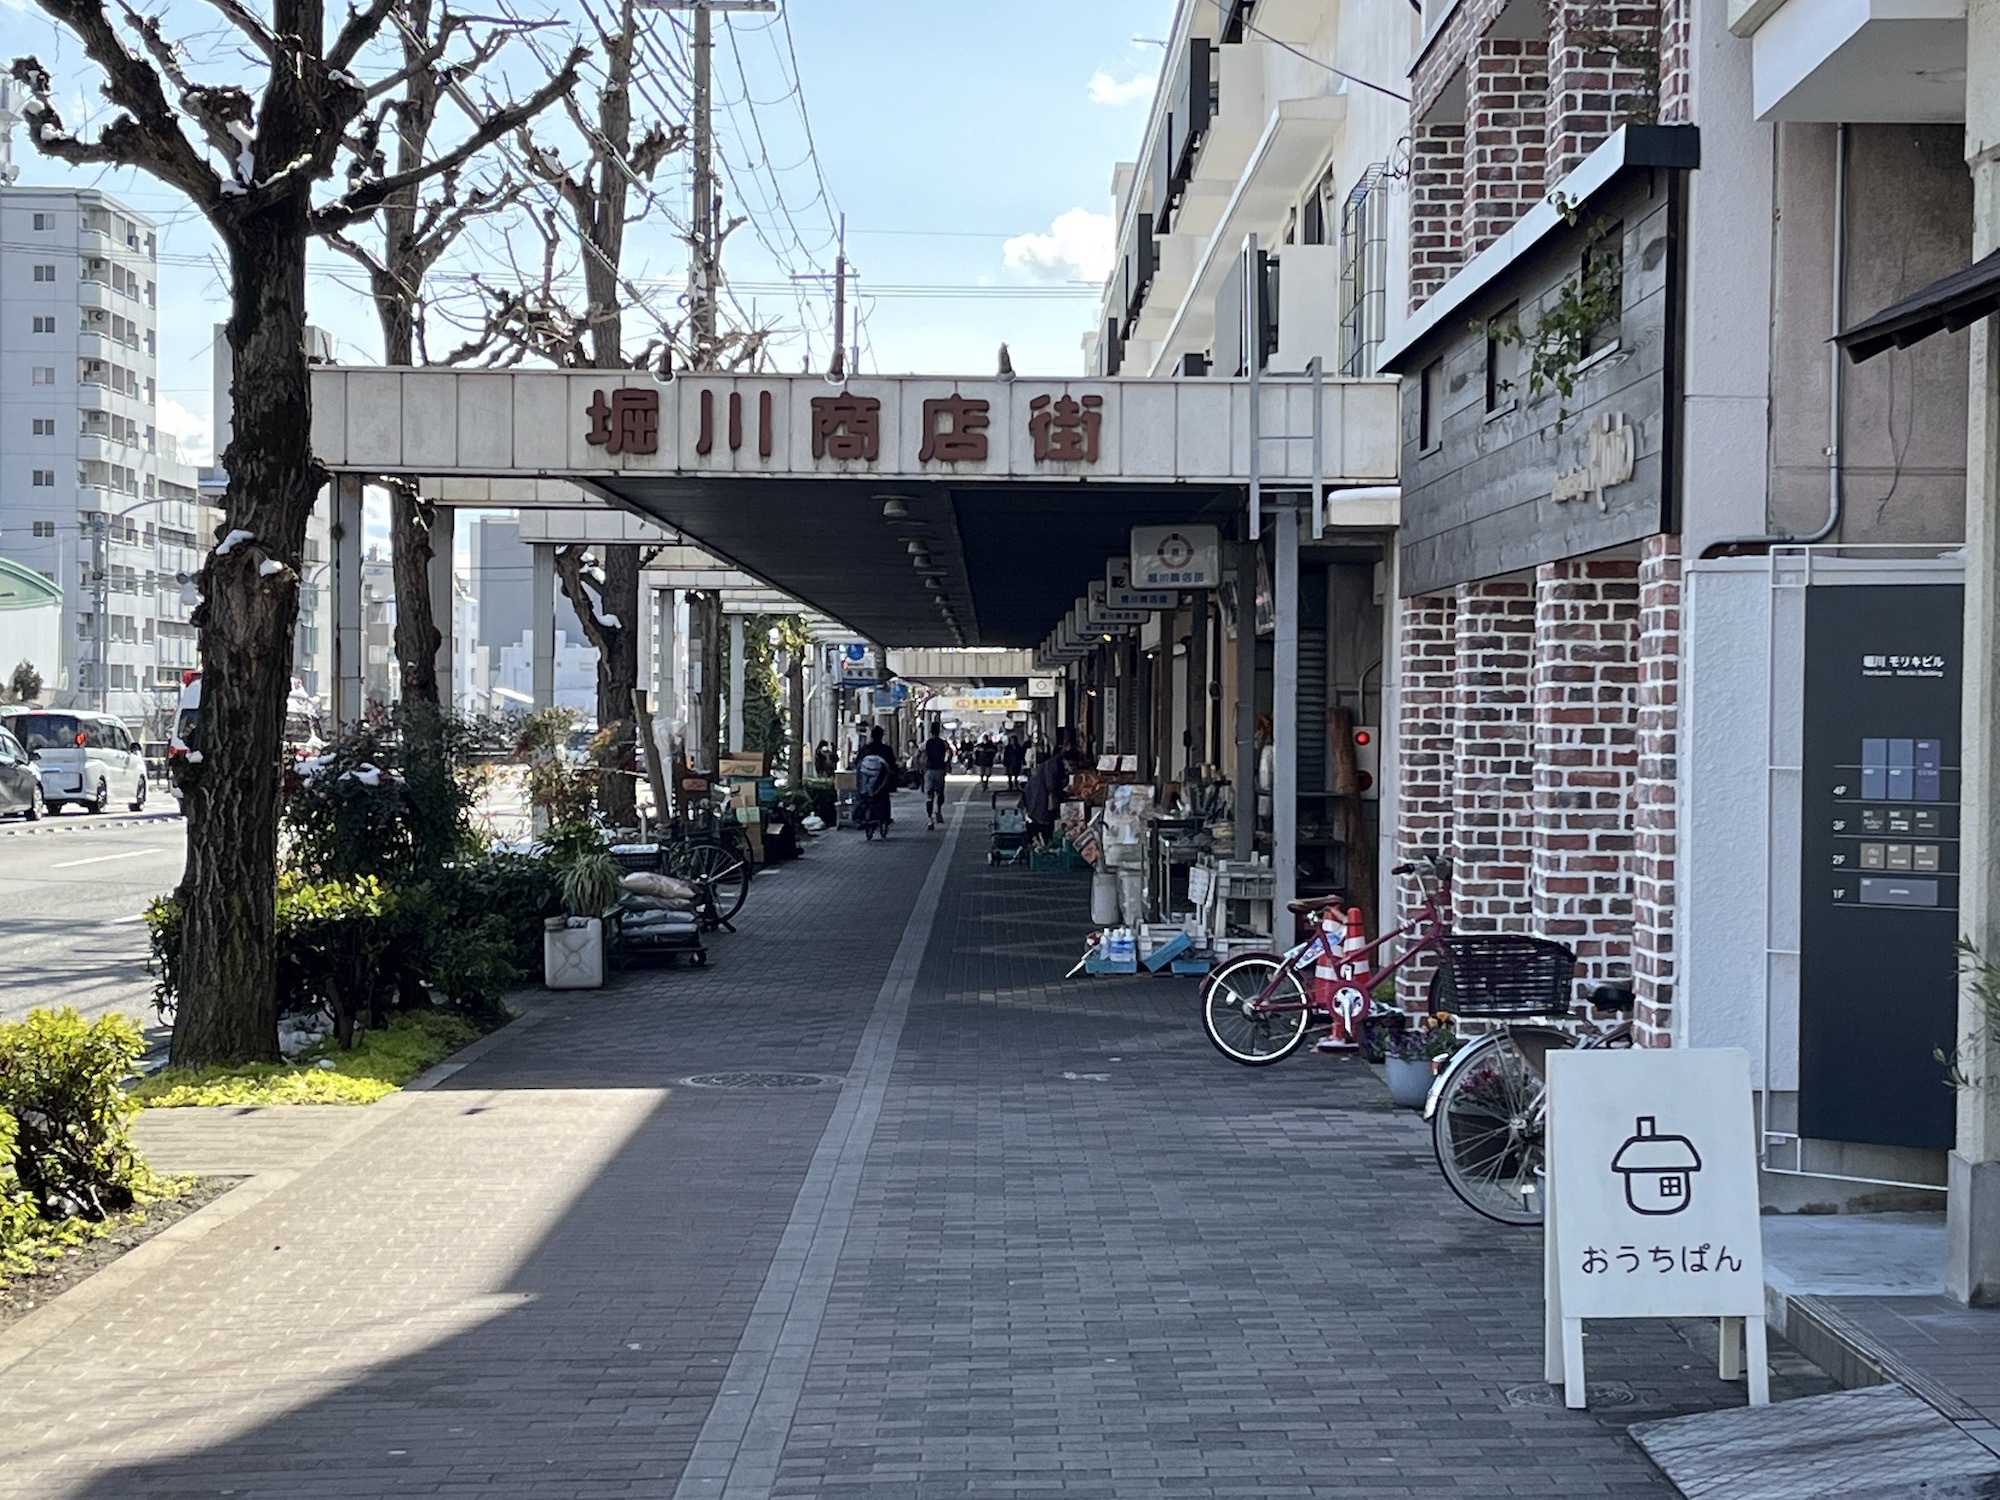 この数年で、新たな店舗やアートスペースが増えている堀川商店街。